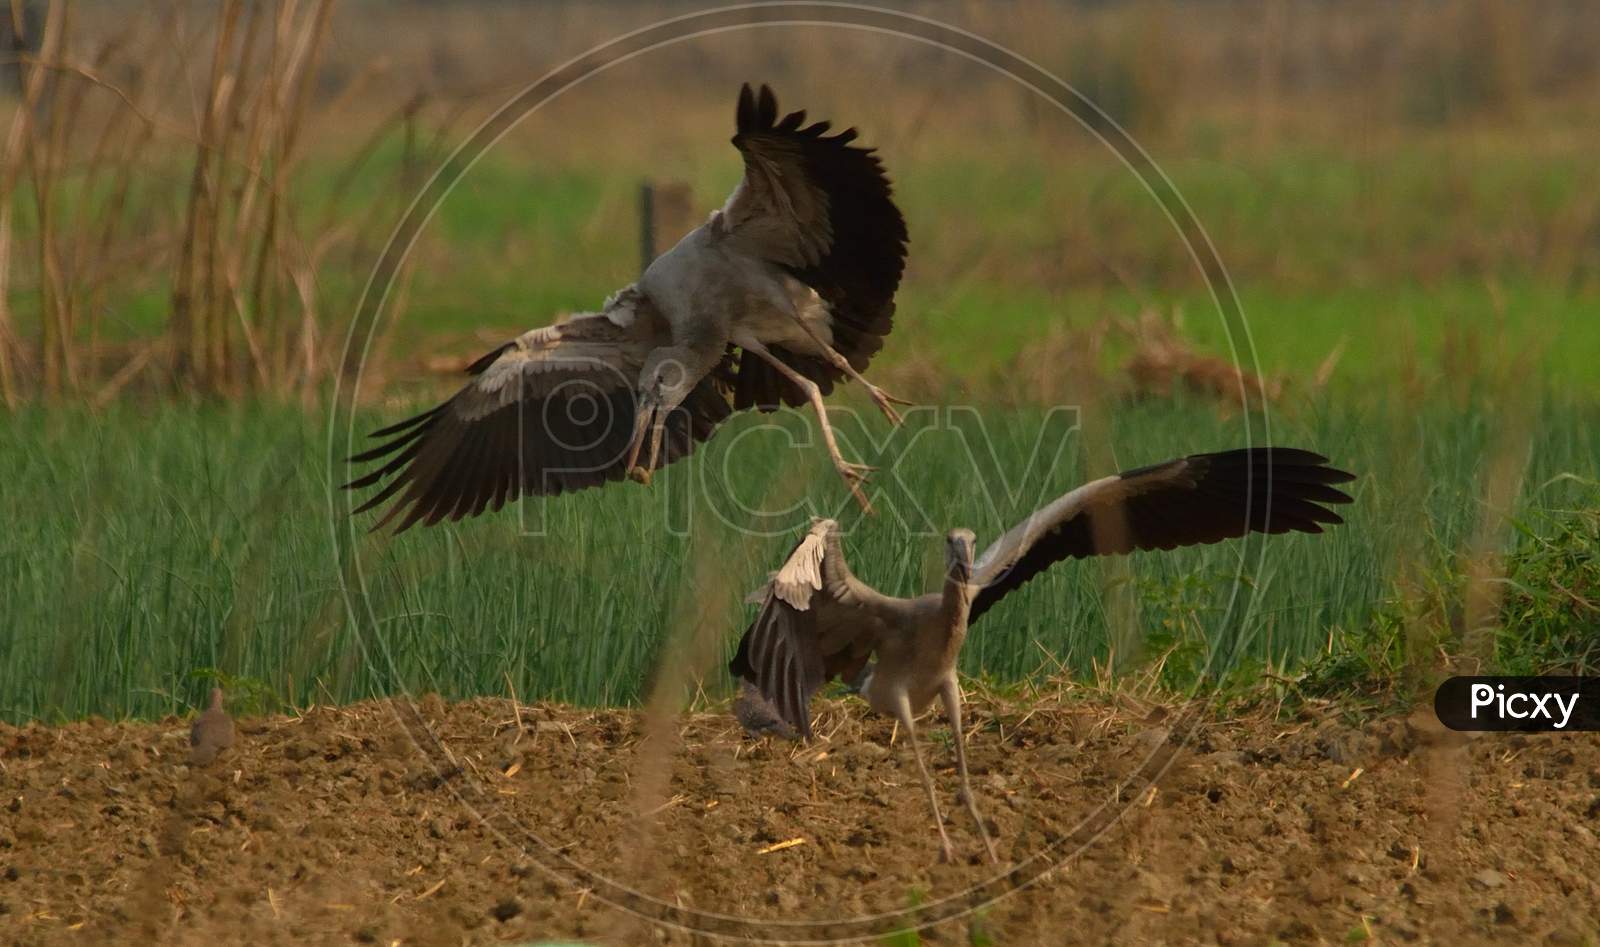 asian open bill stork in fight